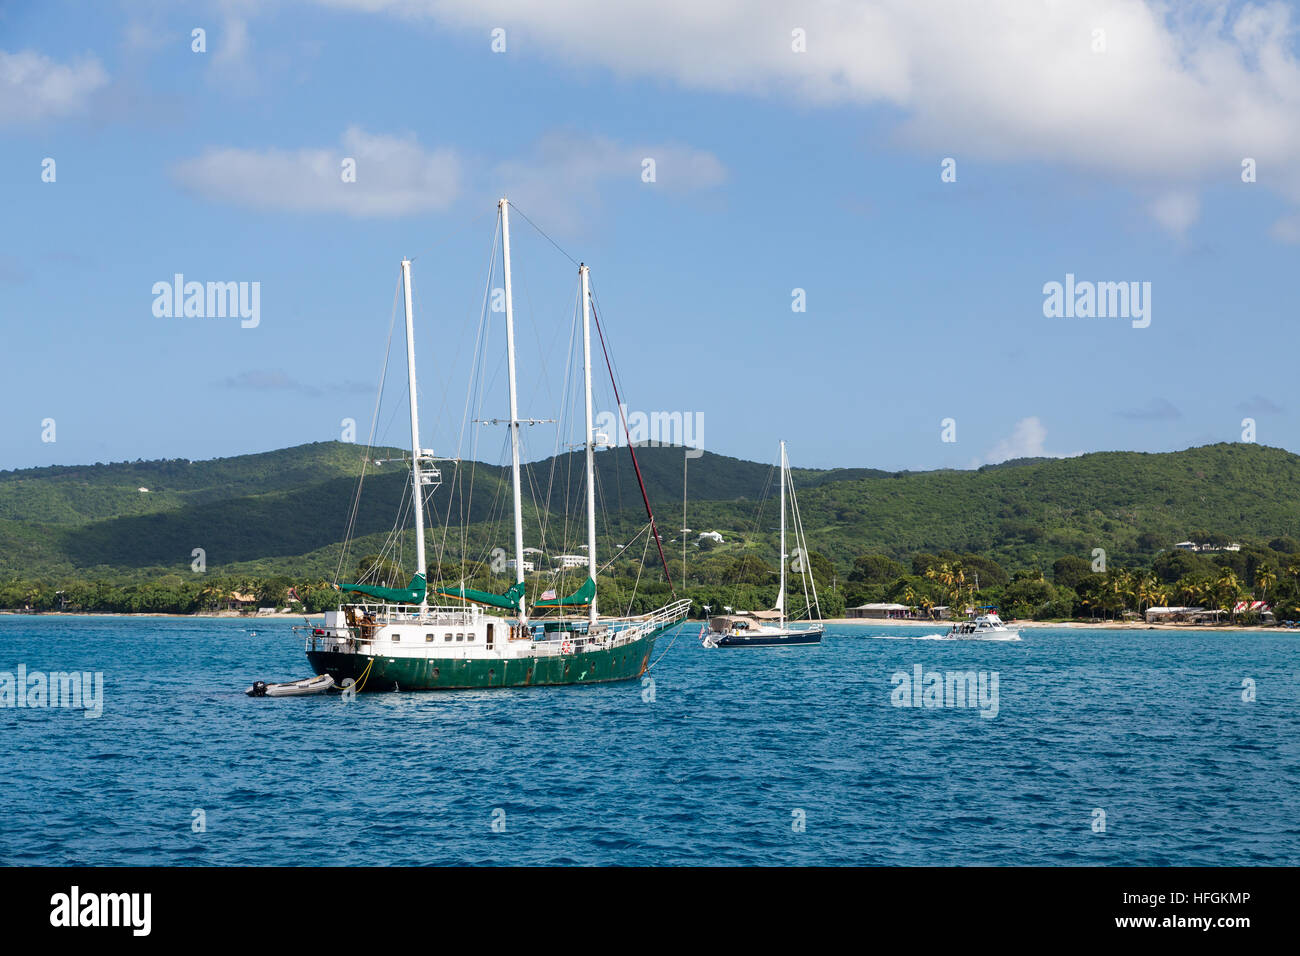 Un trois mâts voilier amarré dans un port des Caraïbes calme Banque D'Images